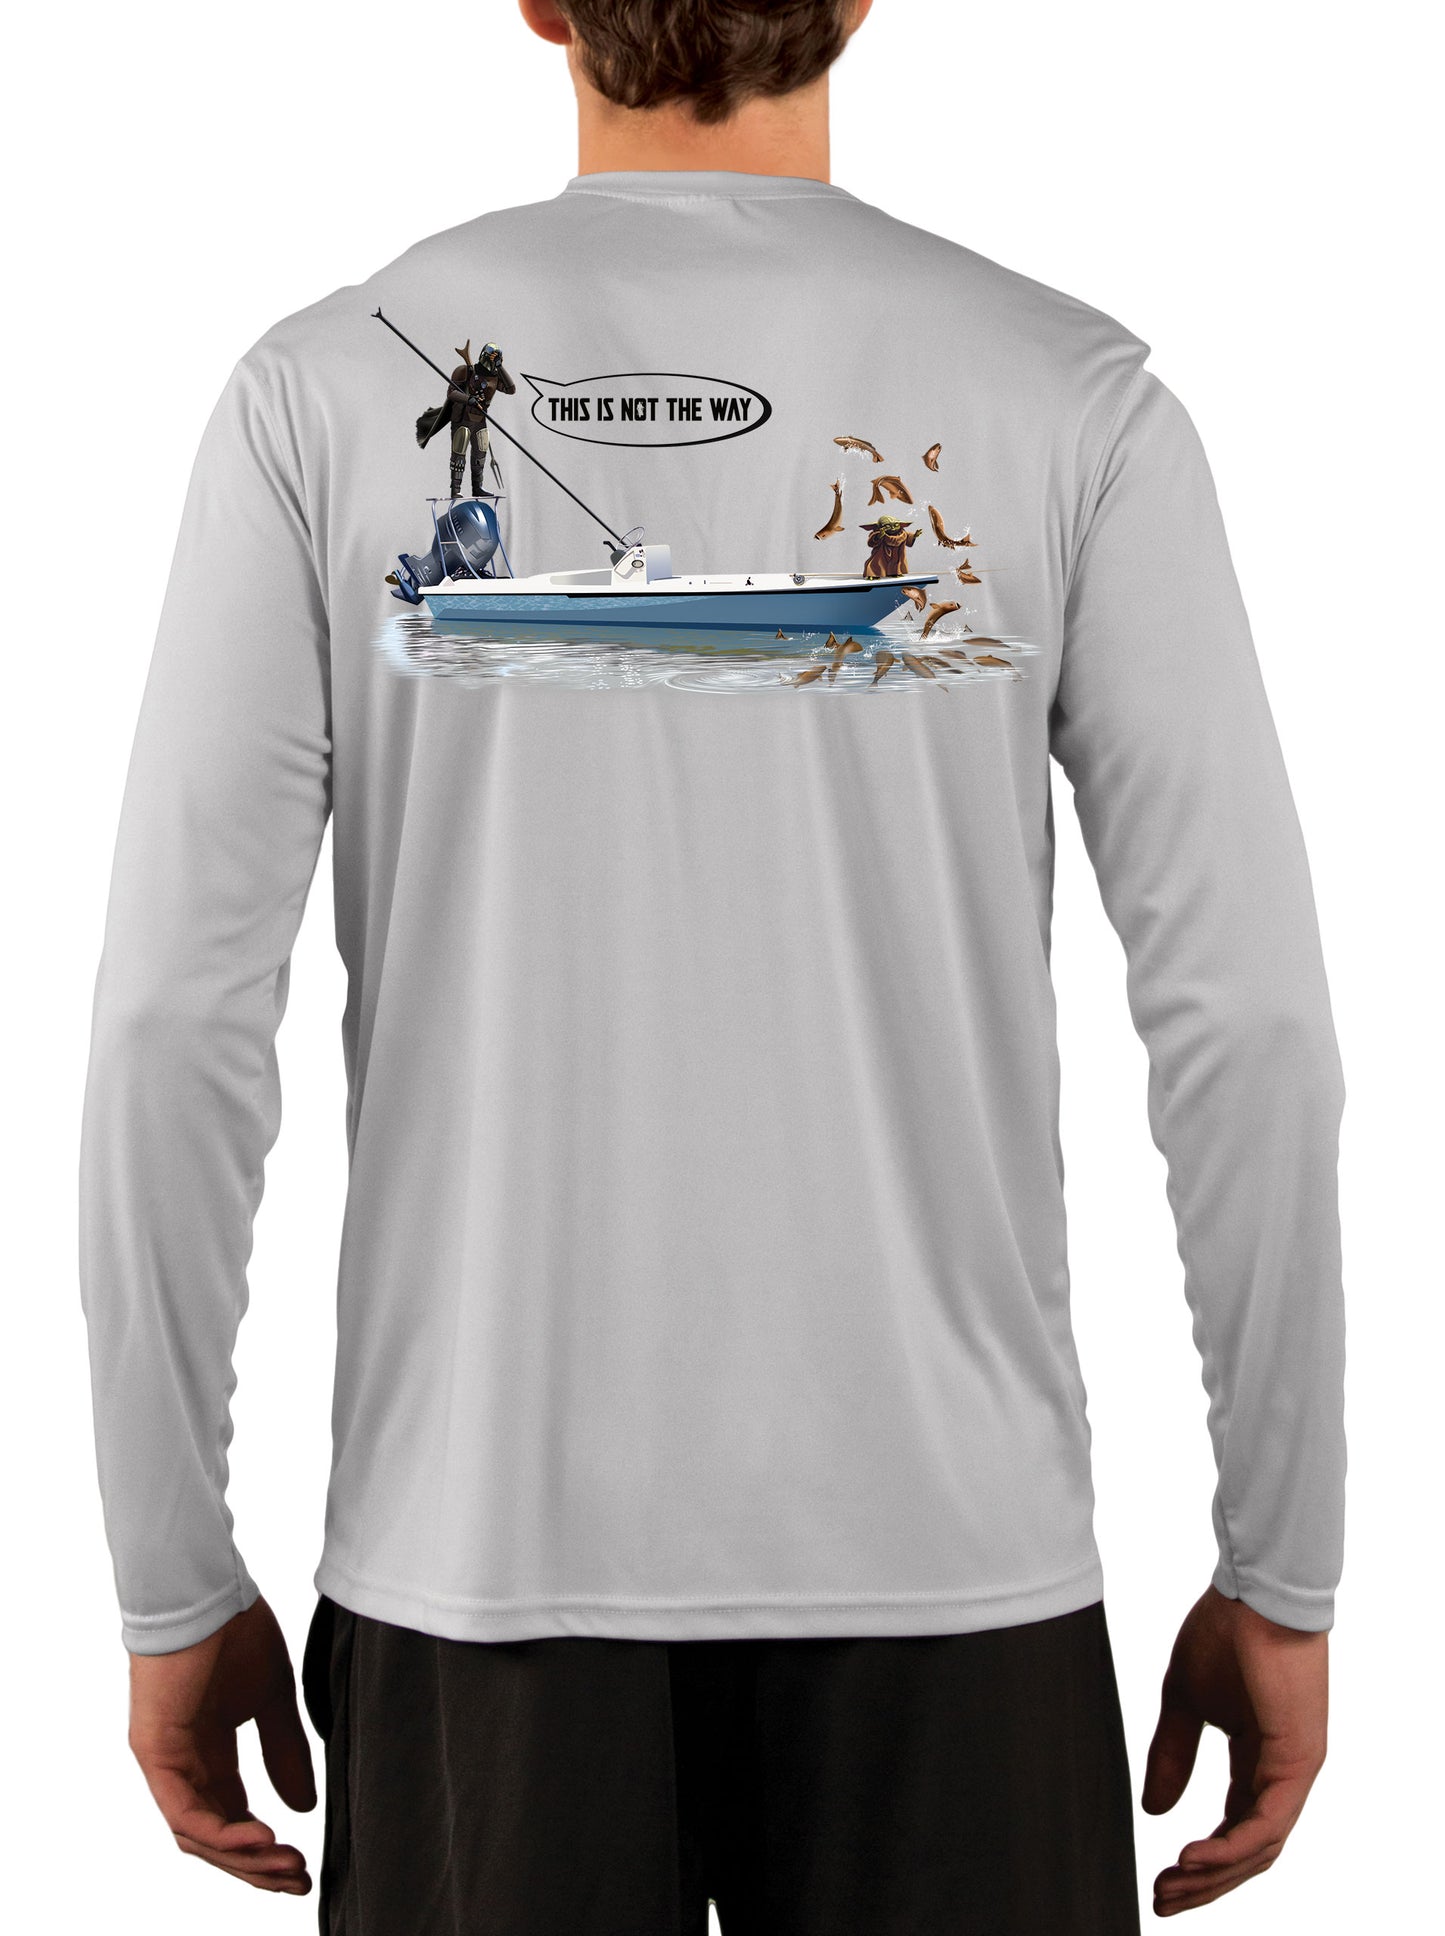 Mandalorian Grogu Baby Yoda Fishing Shirts for Men Star Wars Poling Skiff Medium / Pearl Gray